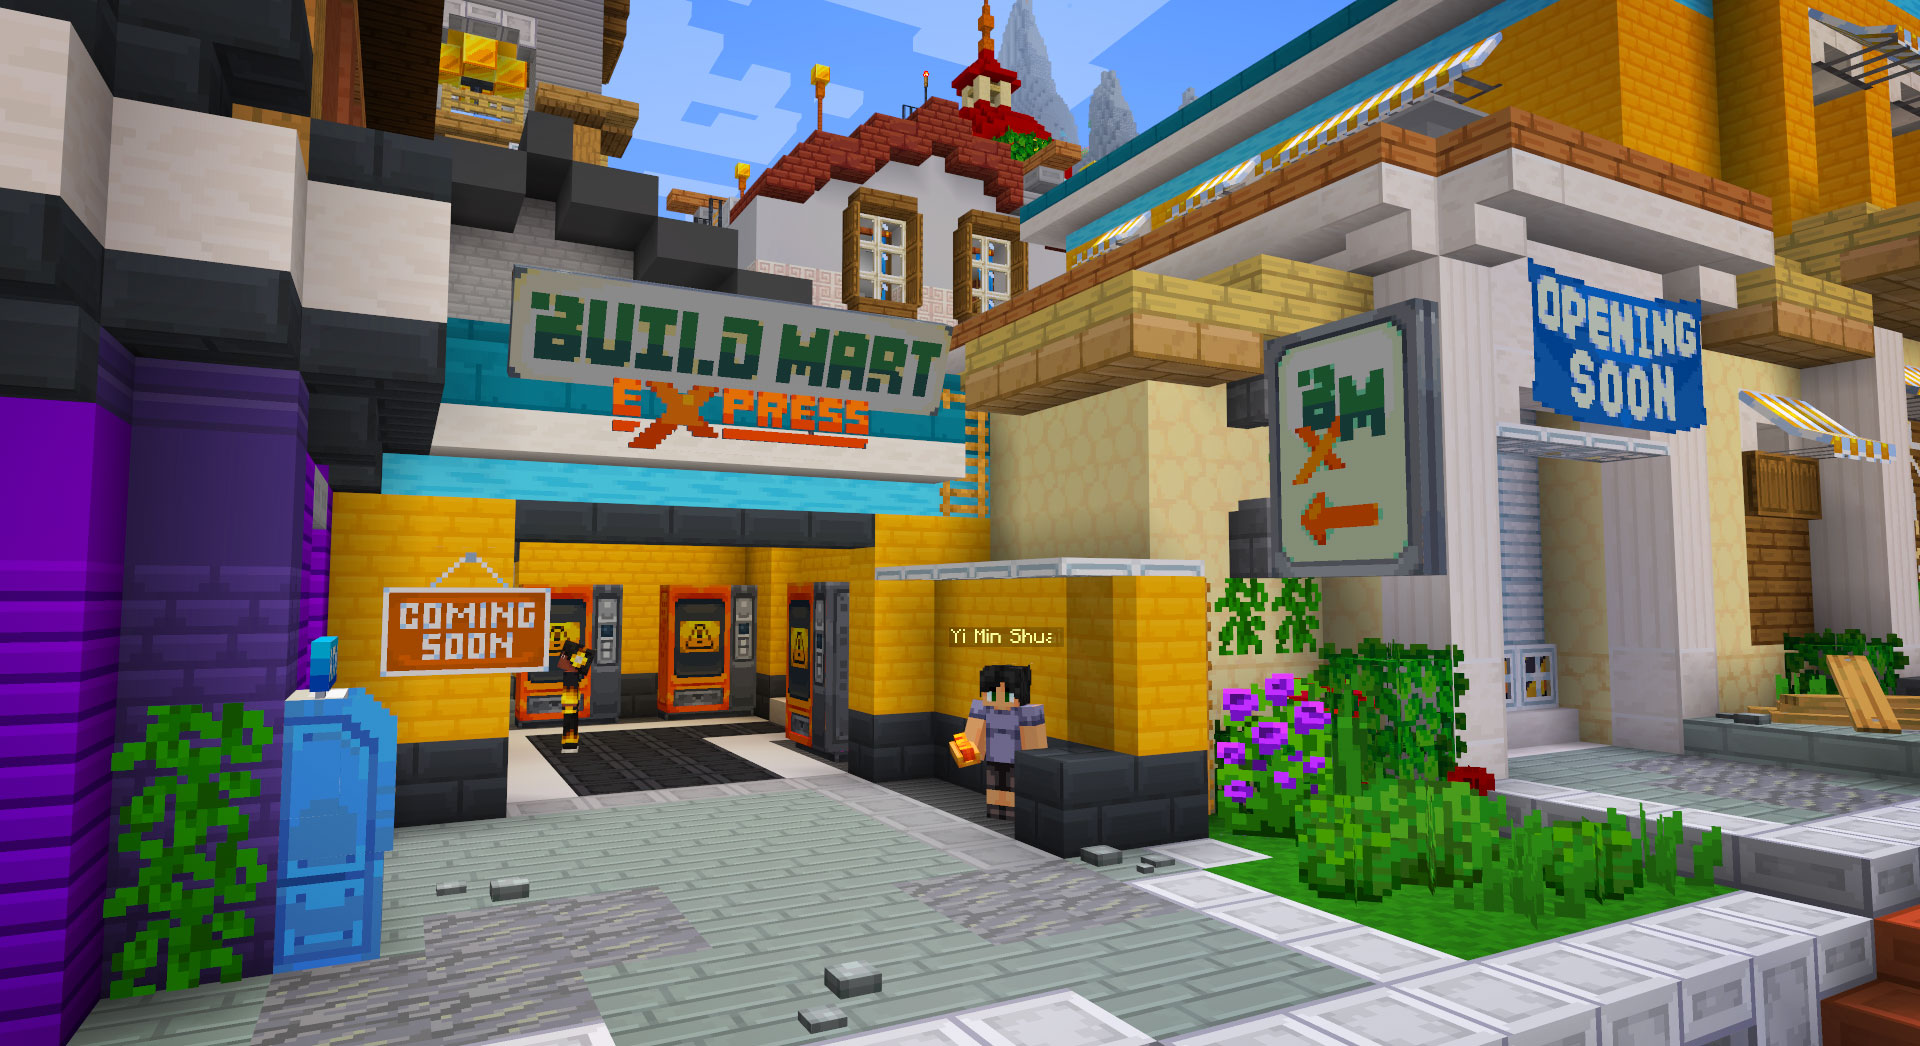 Build-Mart-Express-1.jpg